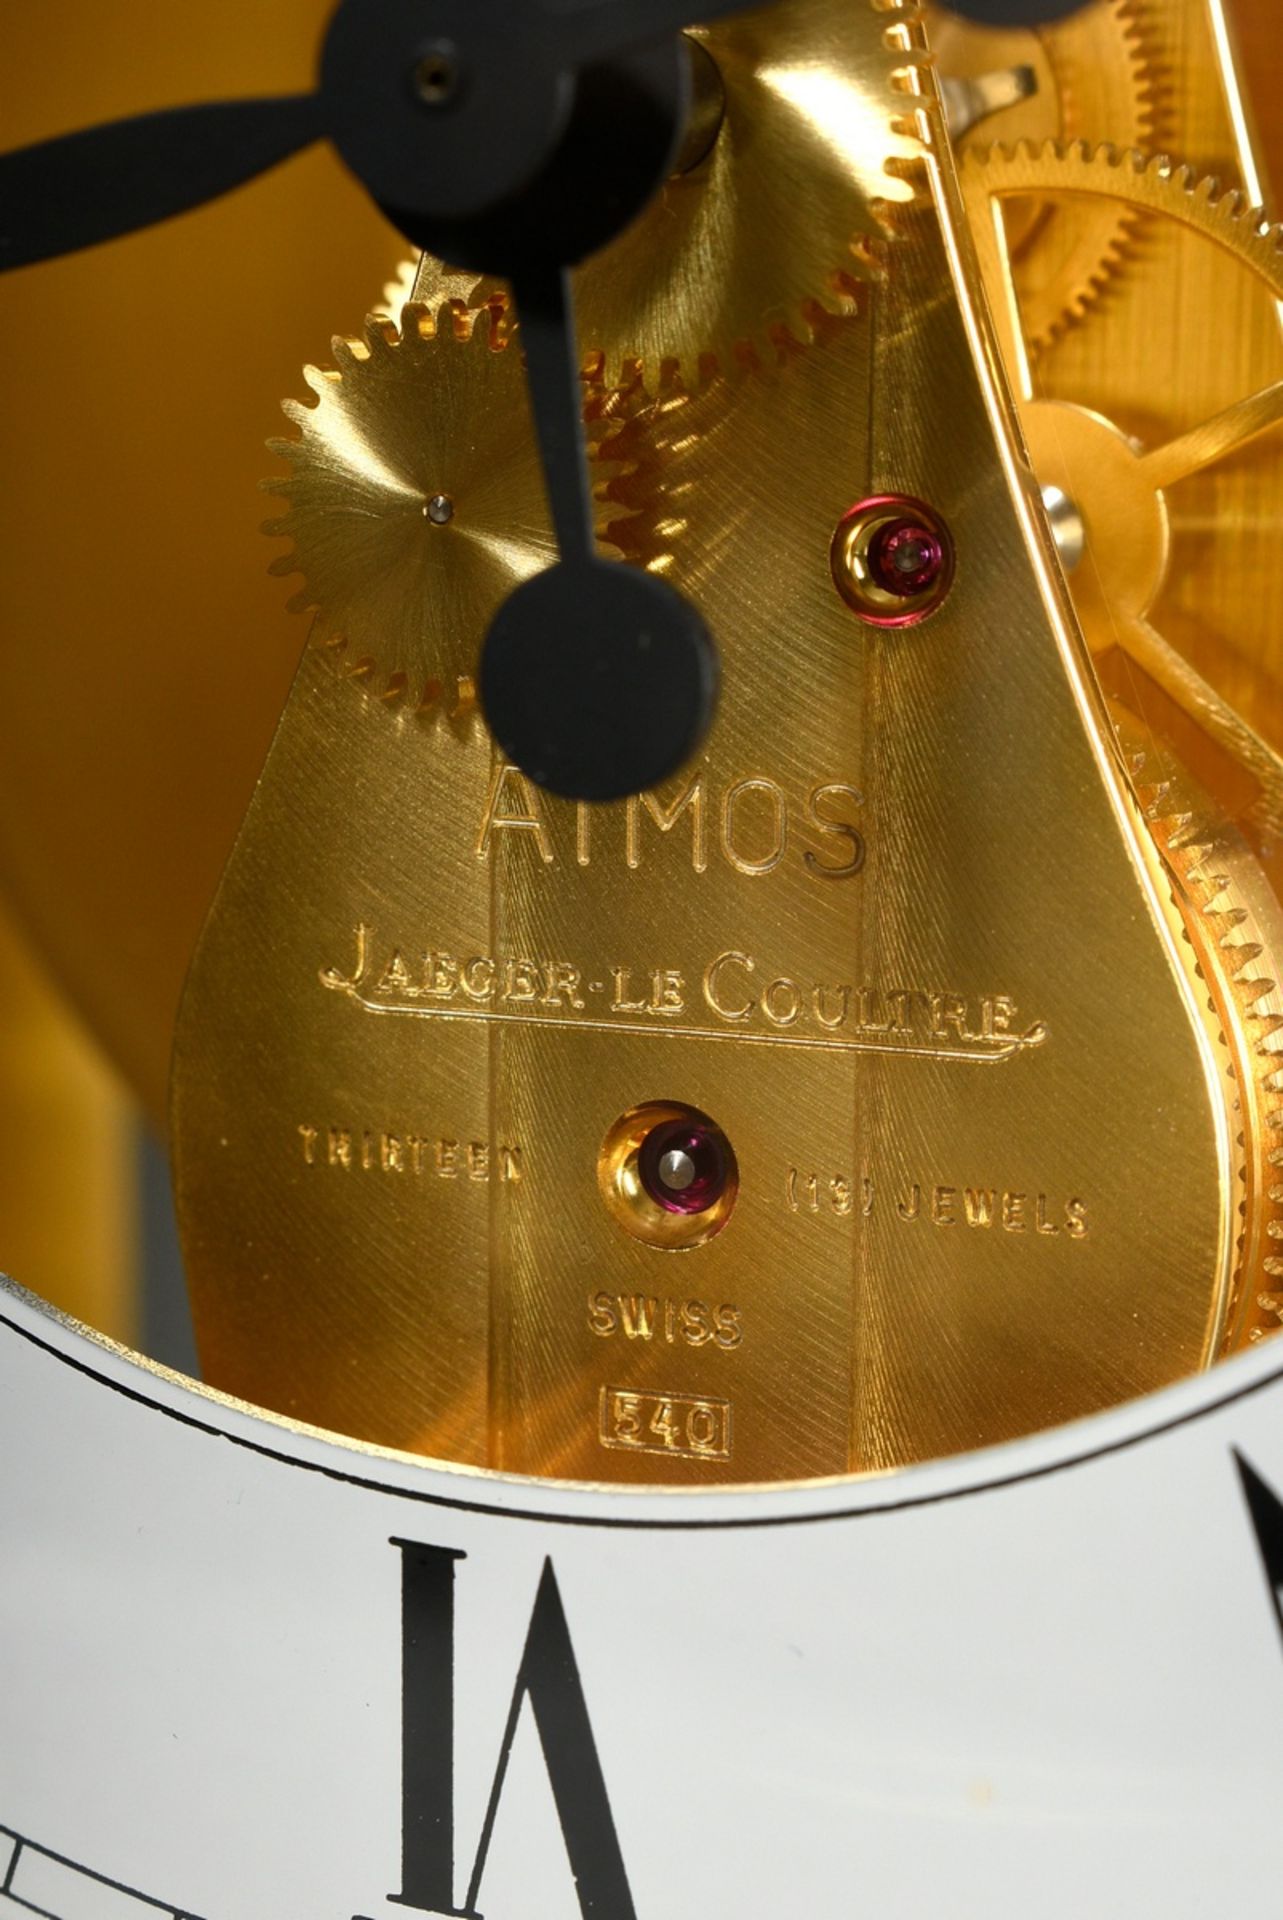 Jaeger LeCoultre Tischuhr "Atmos" mit römischen Ziffern, Nr. 643688, Swiss 540, 23x17,5x13cm, keine - Bild 5 aus 8